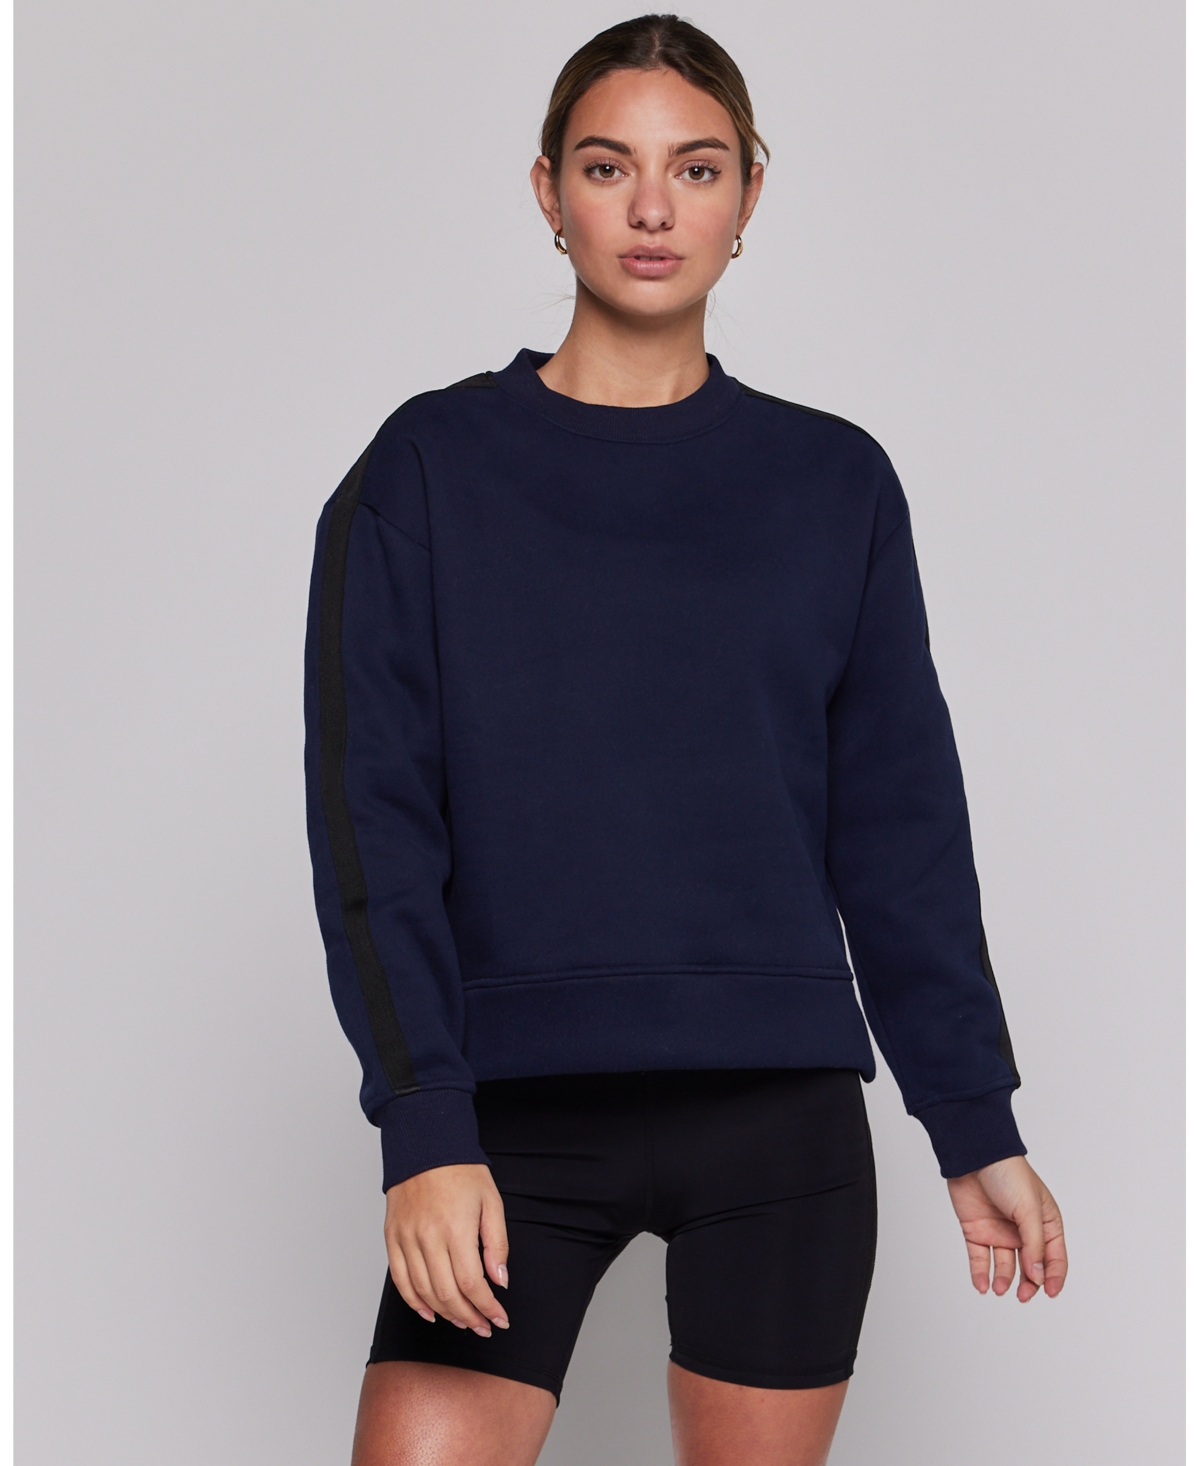 Sideline Fleece Sweatshirt for Women - Matcha/bone